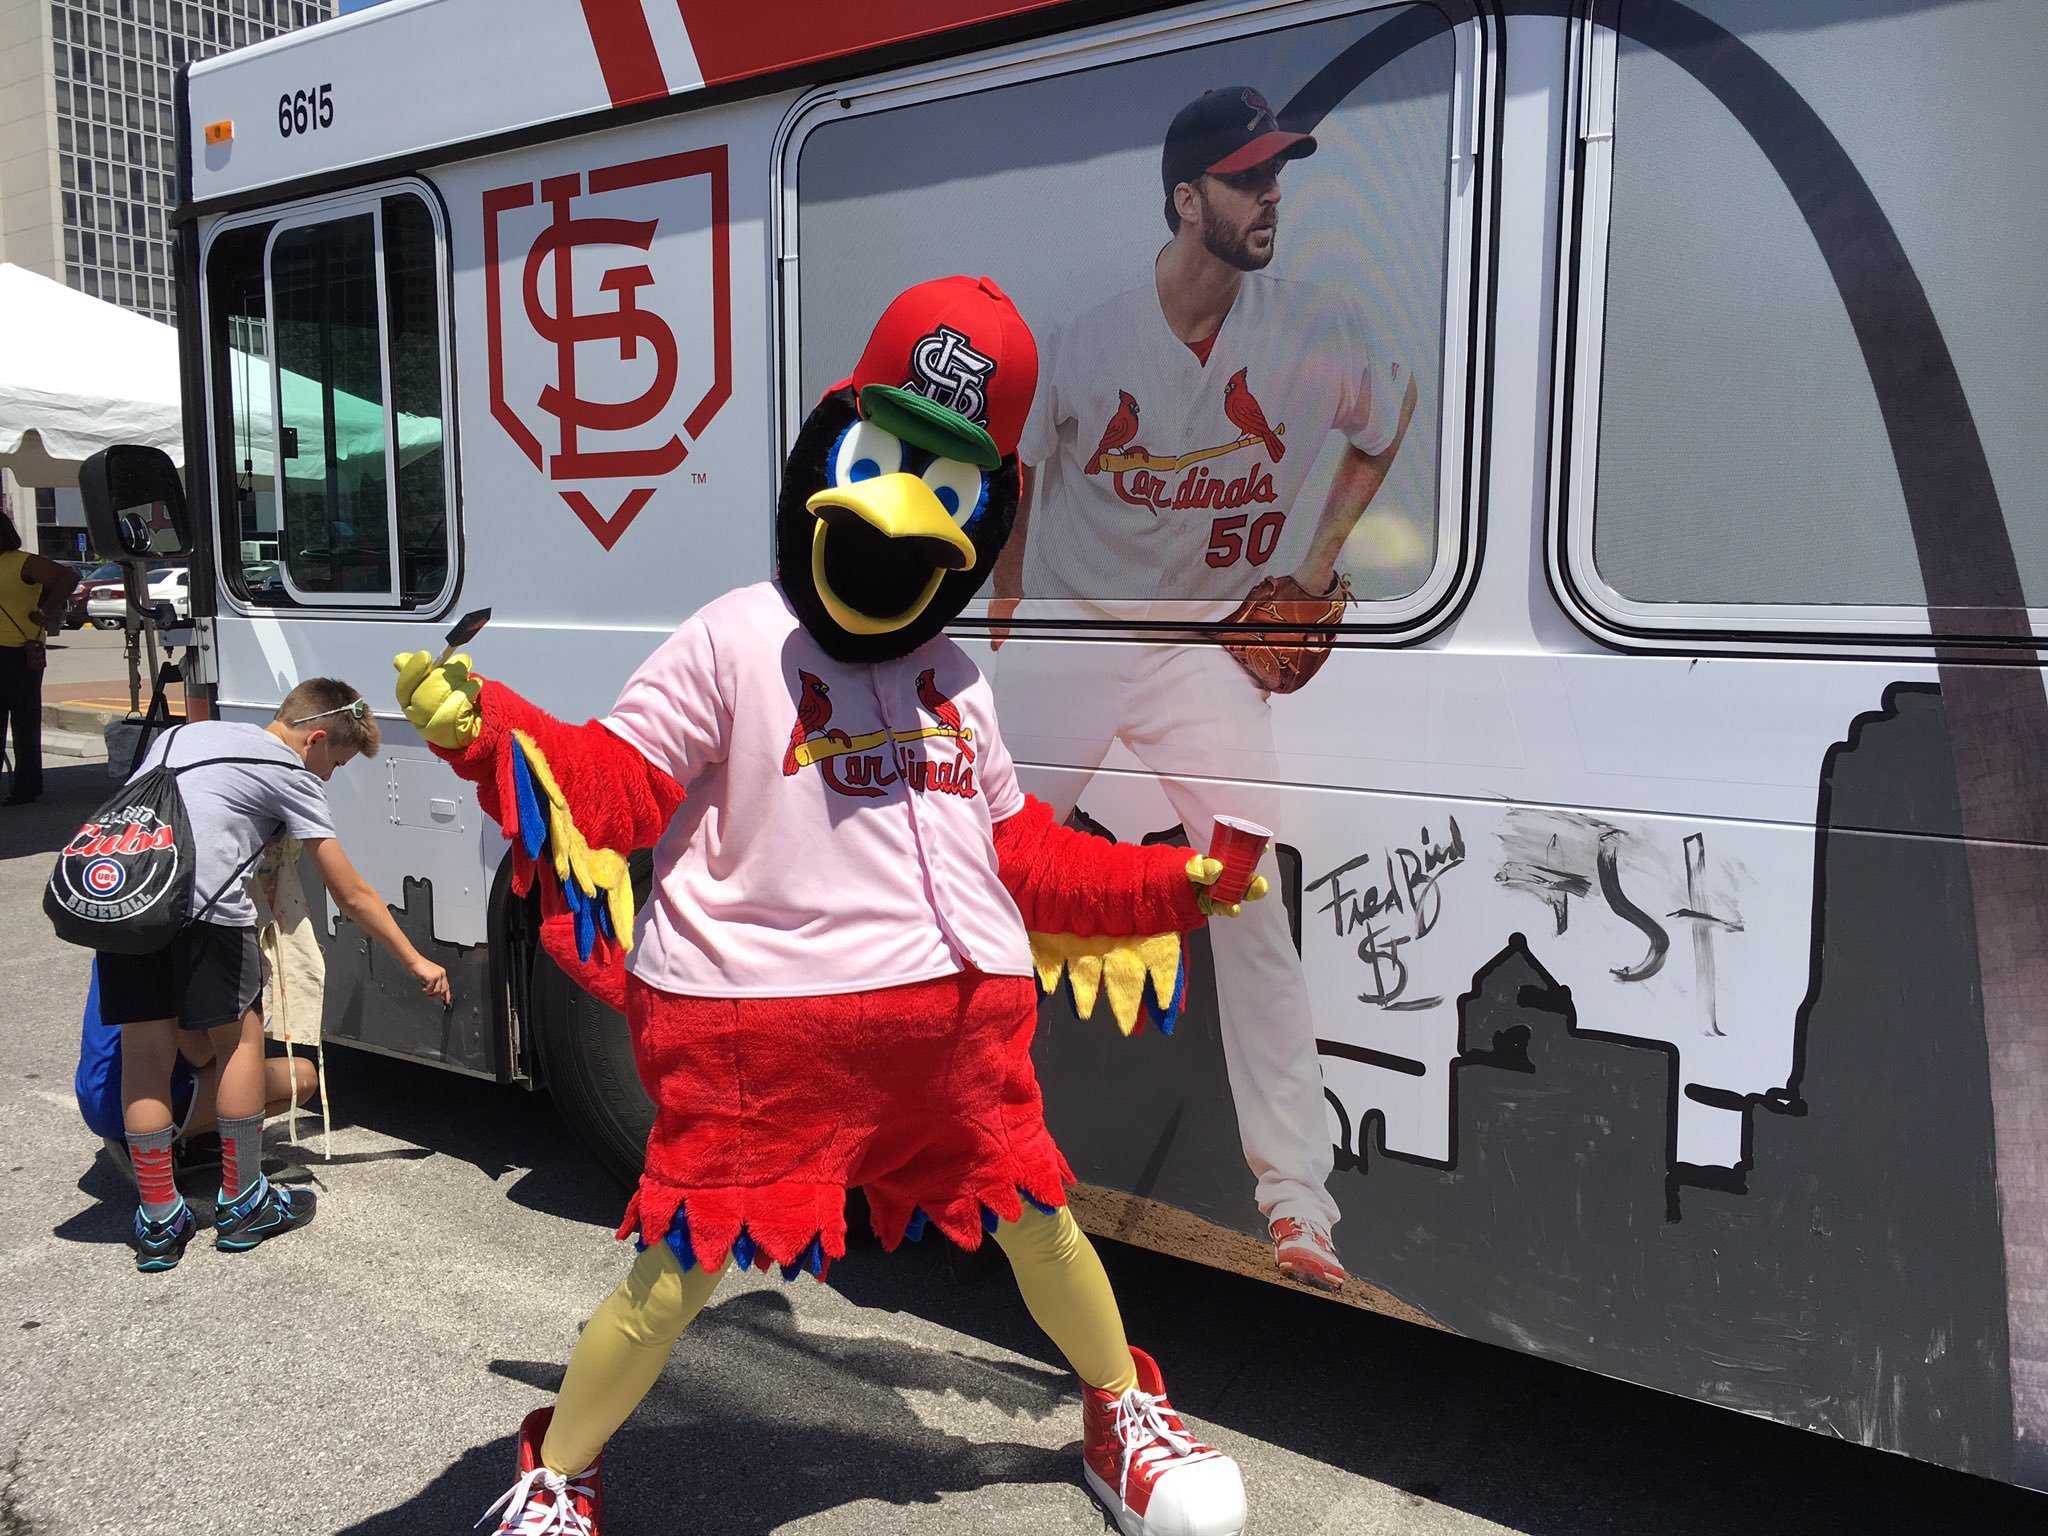 Metro, St. Louis Cardinals Team Up to Paint Bus at Busch Stadium | Metro Transit – St. Louis